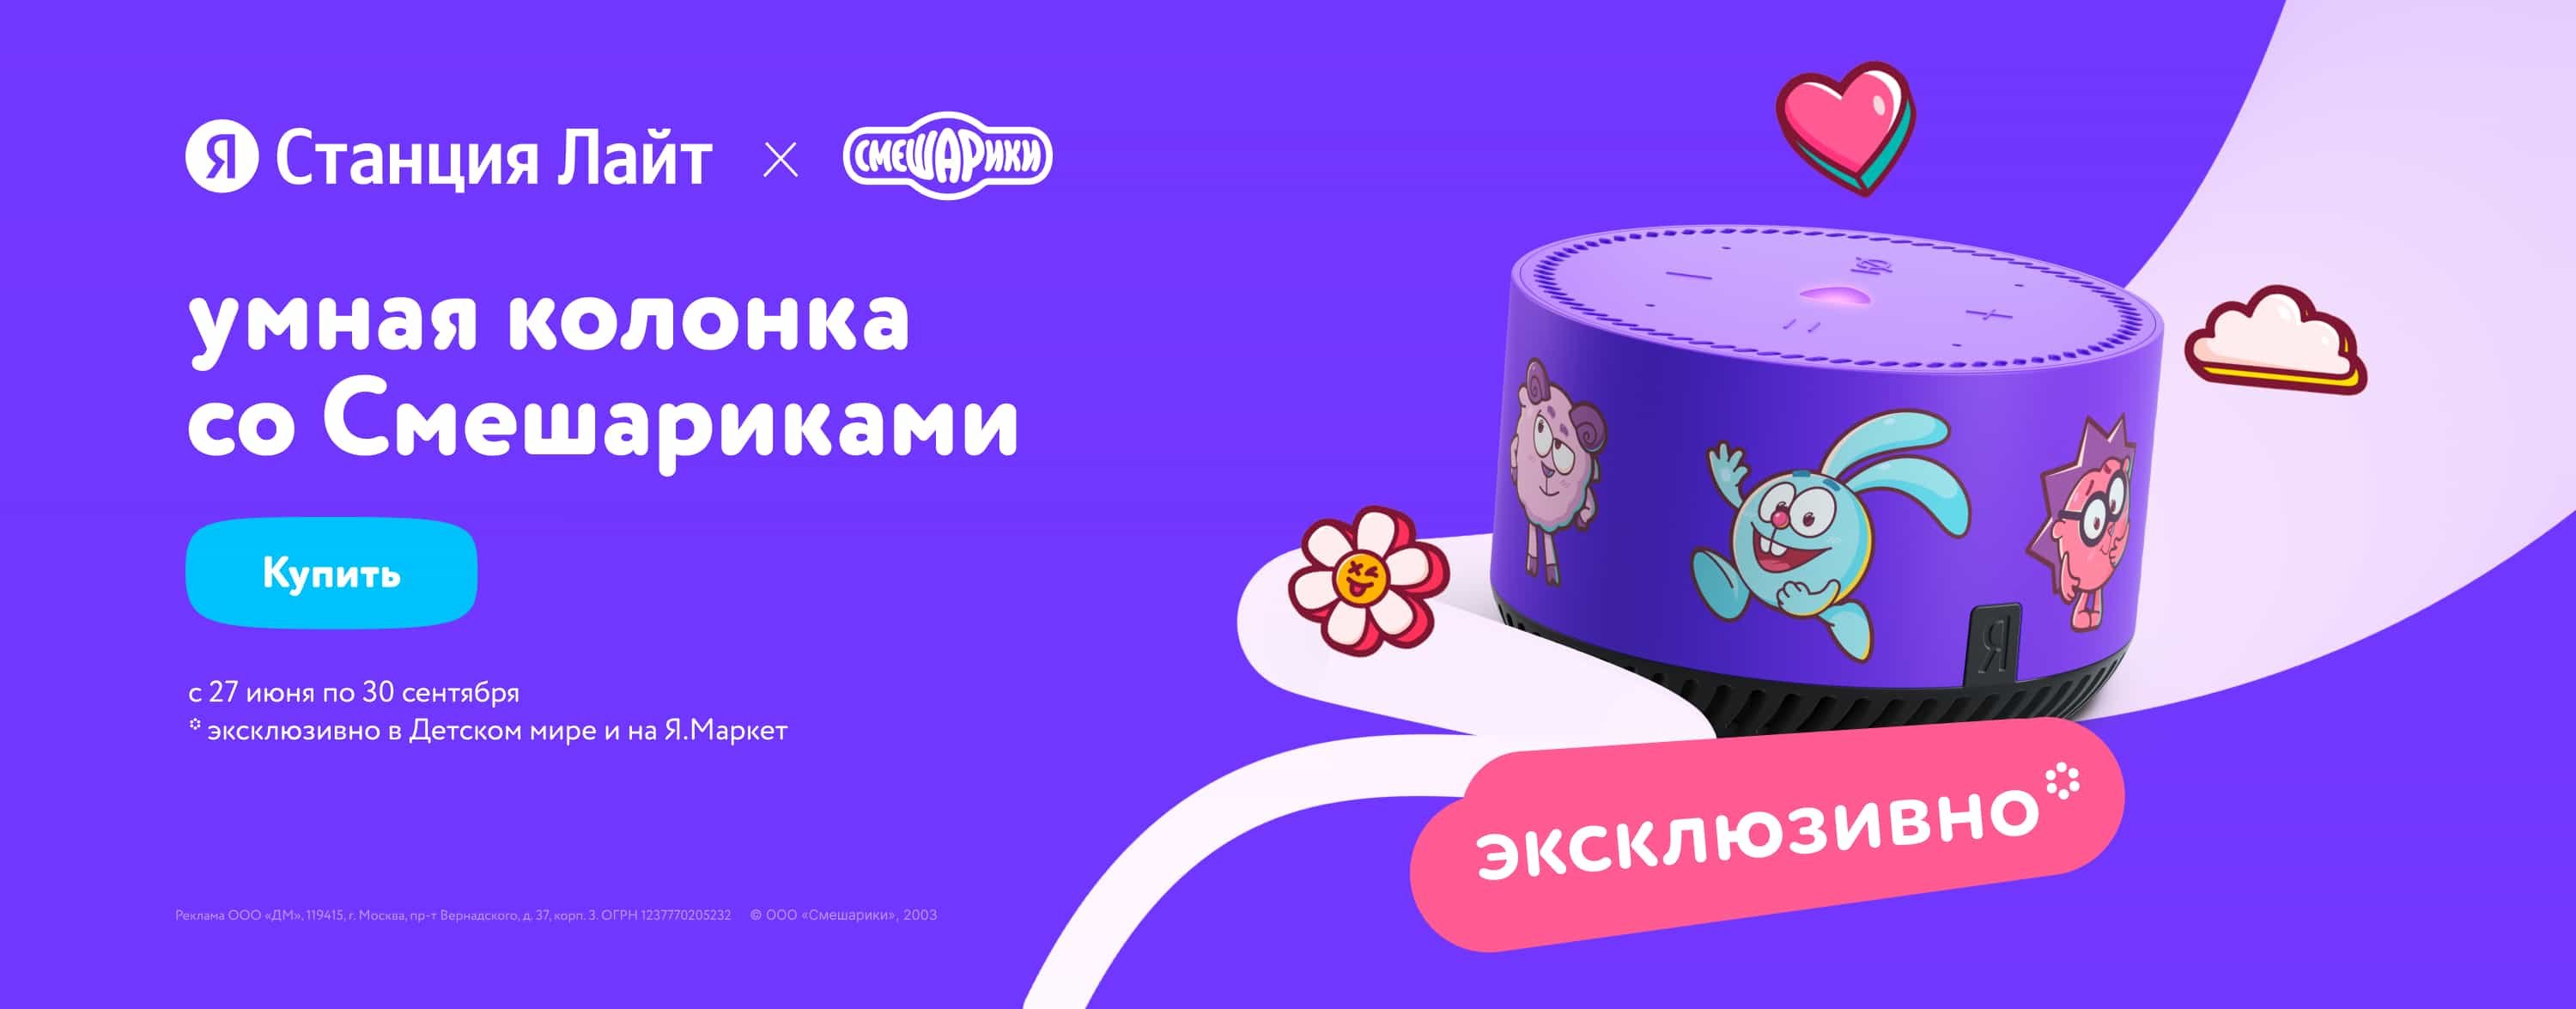 Яндекс Станция Лайт со Смешариками эксклюзивно в Детском мире категория